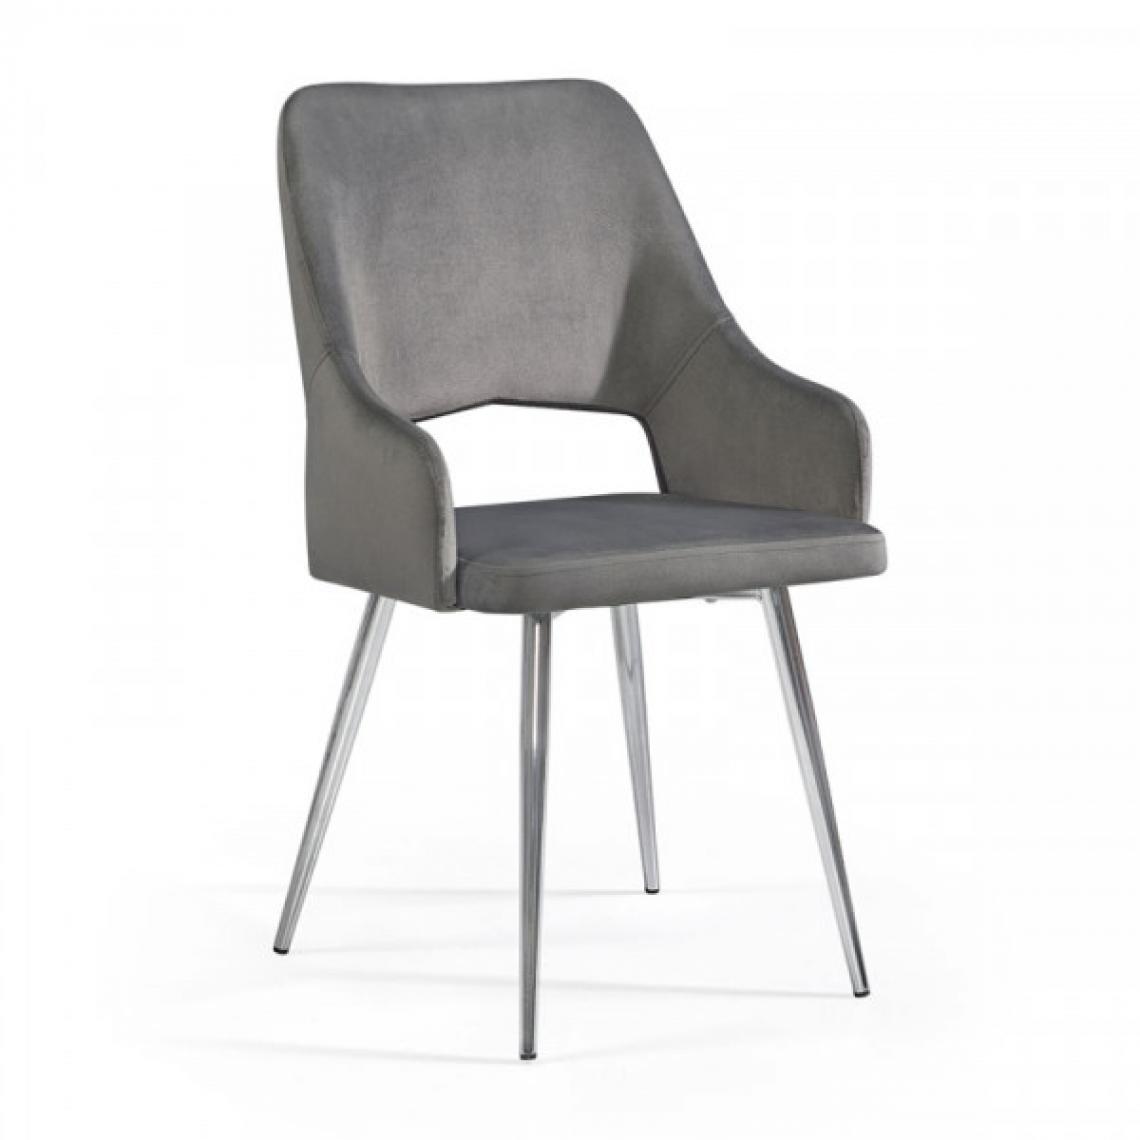 Dansmamaison - Chaise en tissu velours Gris - LISA - L 56 x l 50 x H 78 cm - Chaises